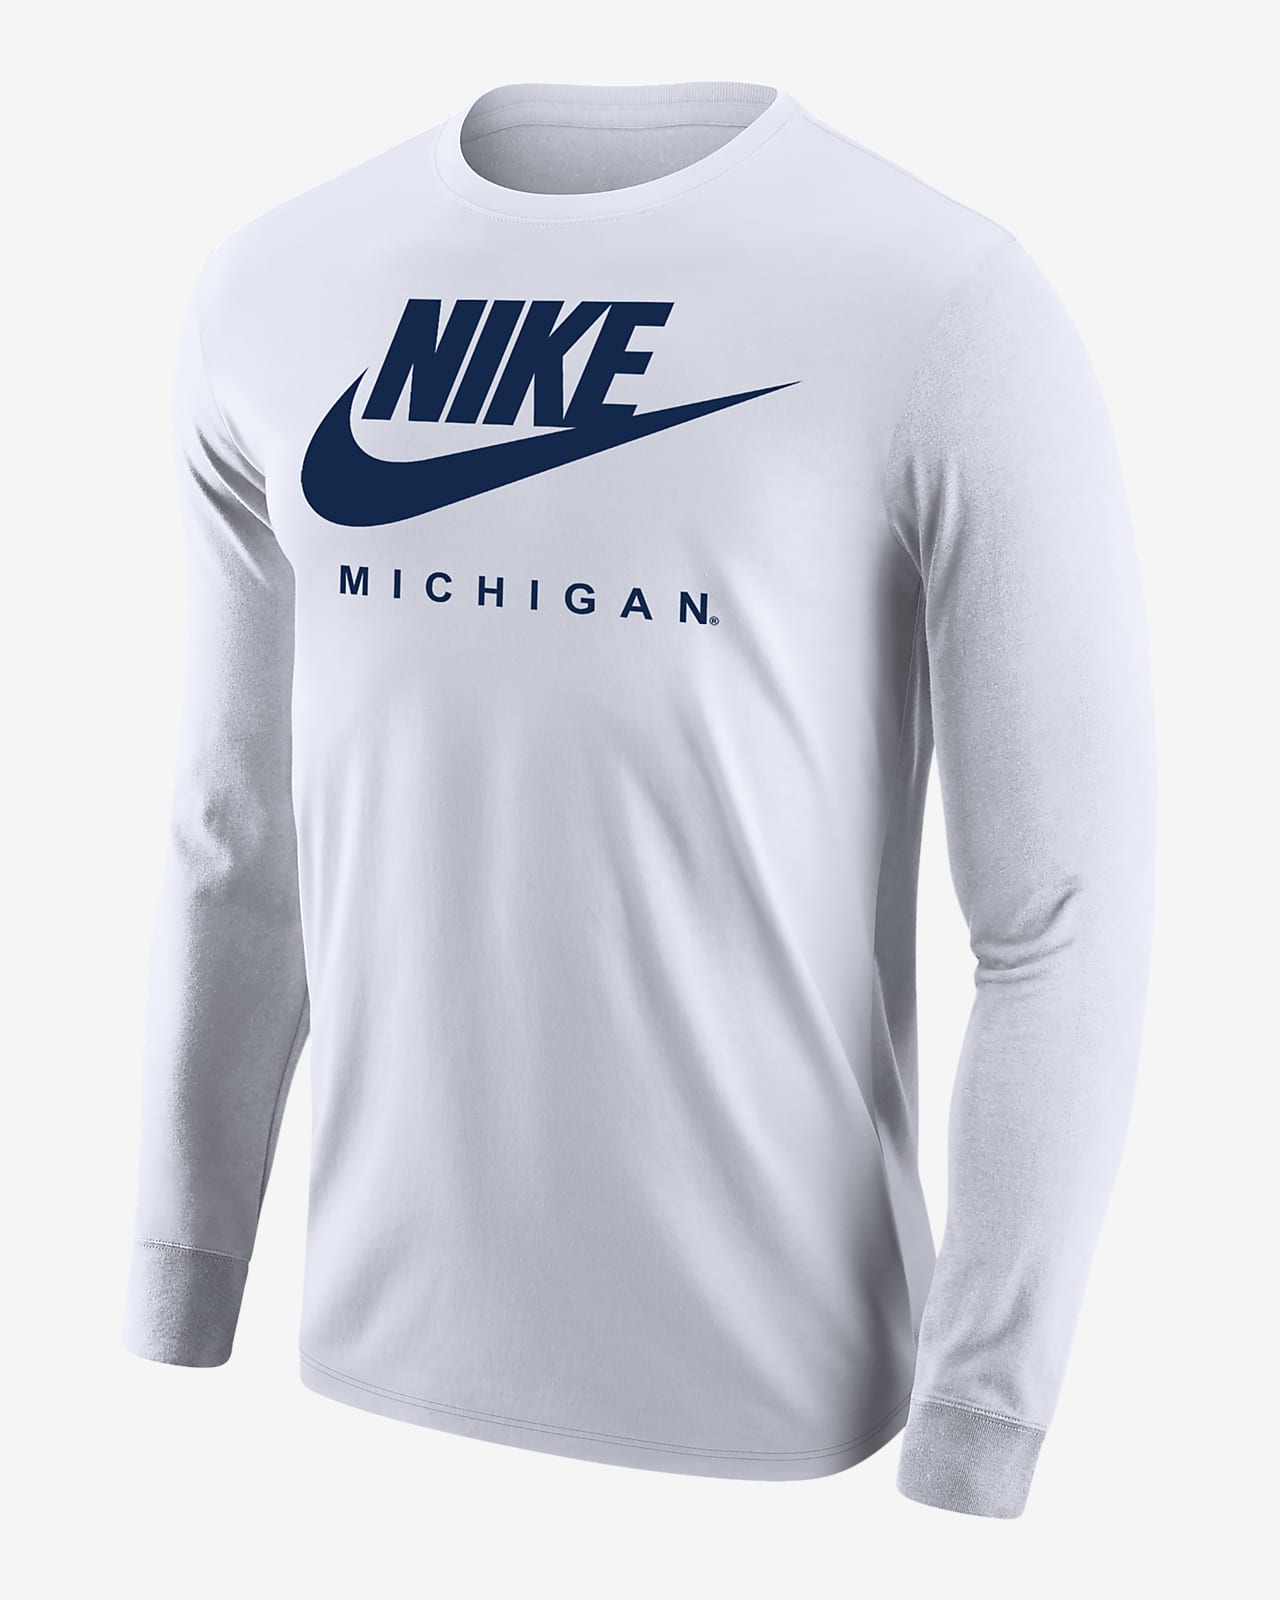 Michigan Men's Nike College 365 Long-Sleeve T-Shirt